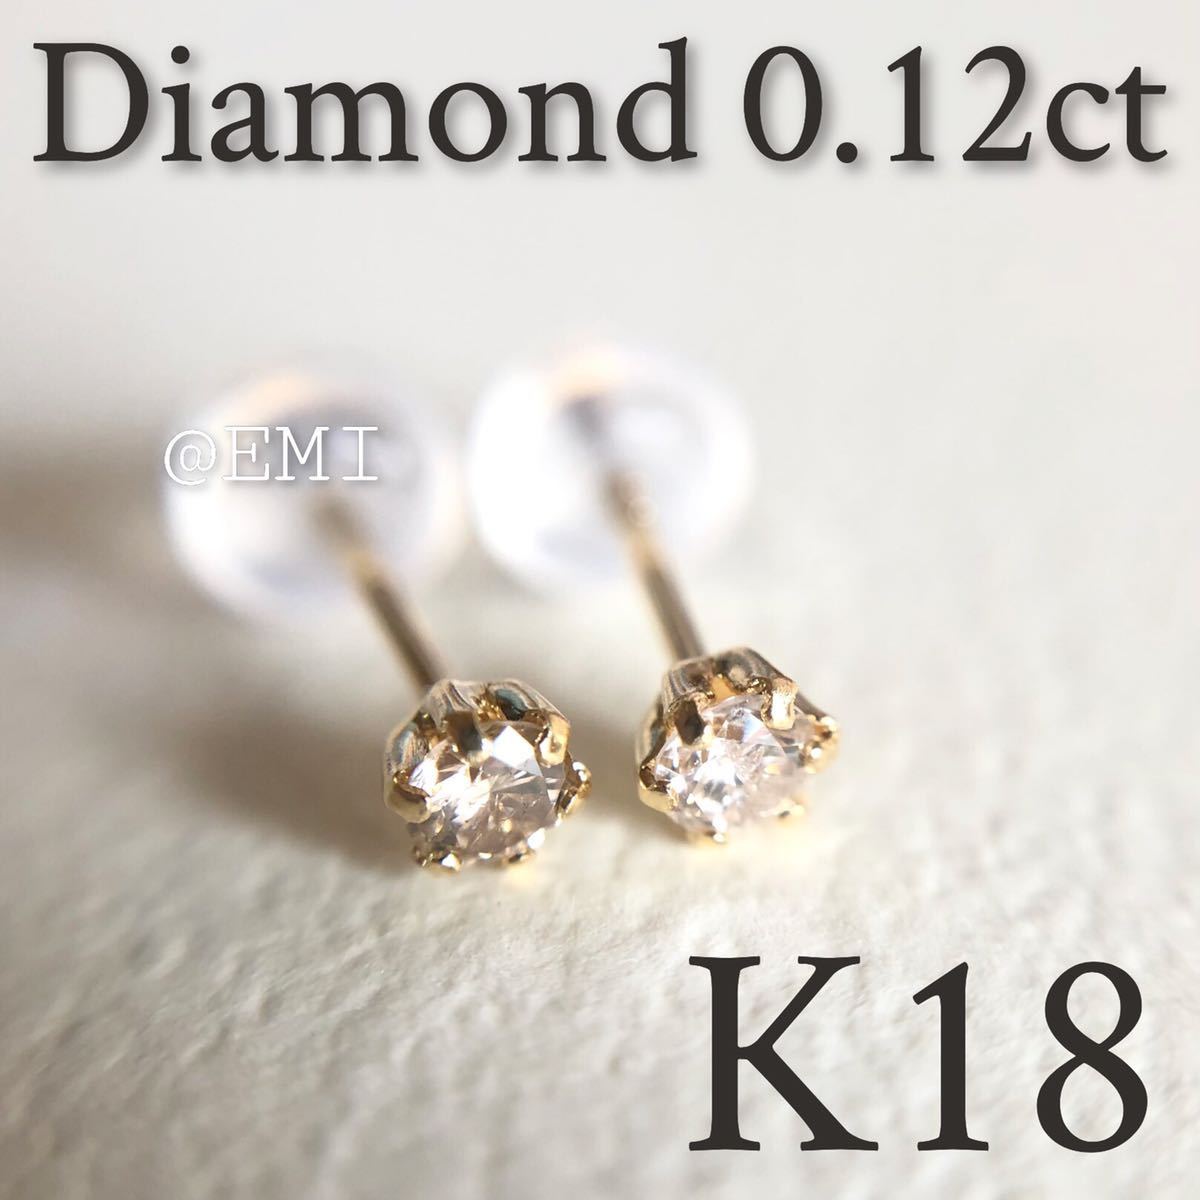 K18 18金イエローゴールド ダイヤモンド0 12ct ピアス 天然